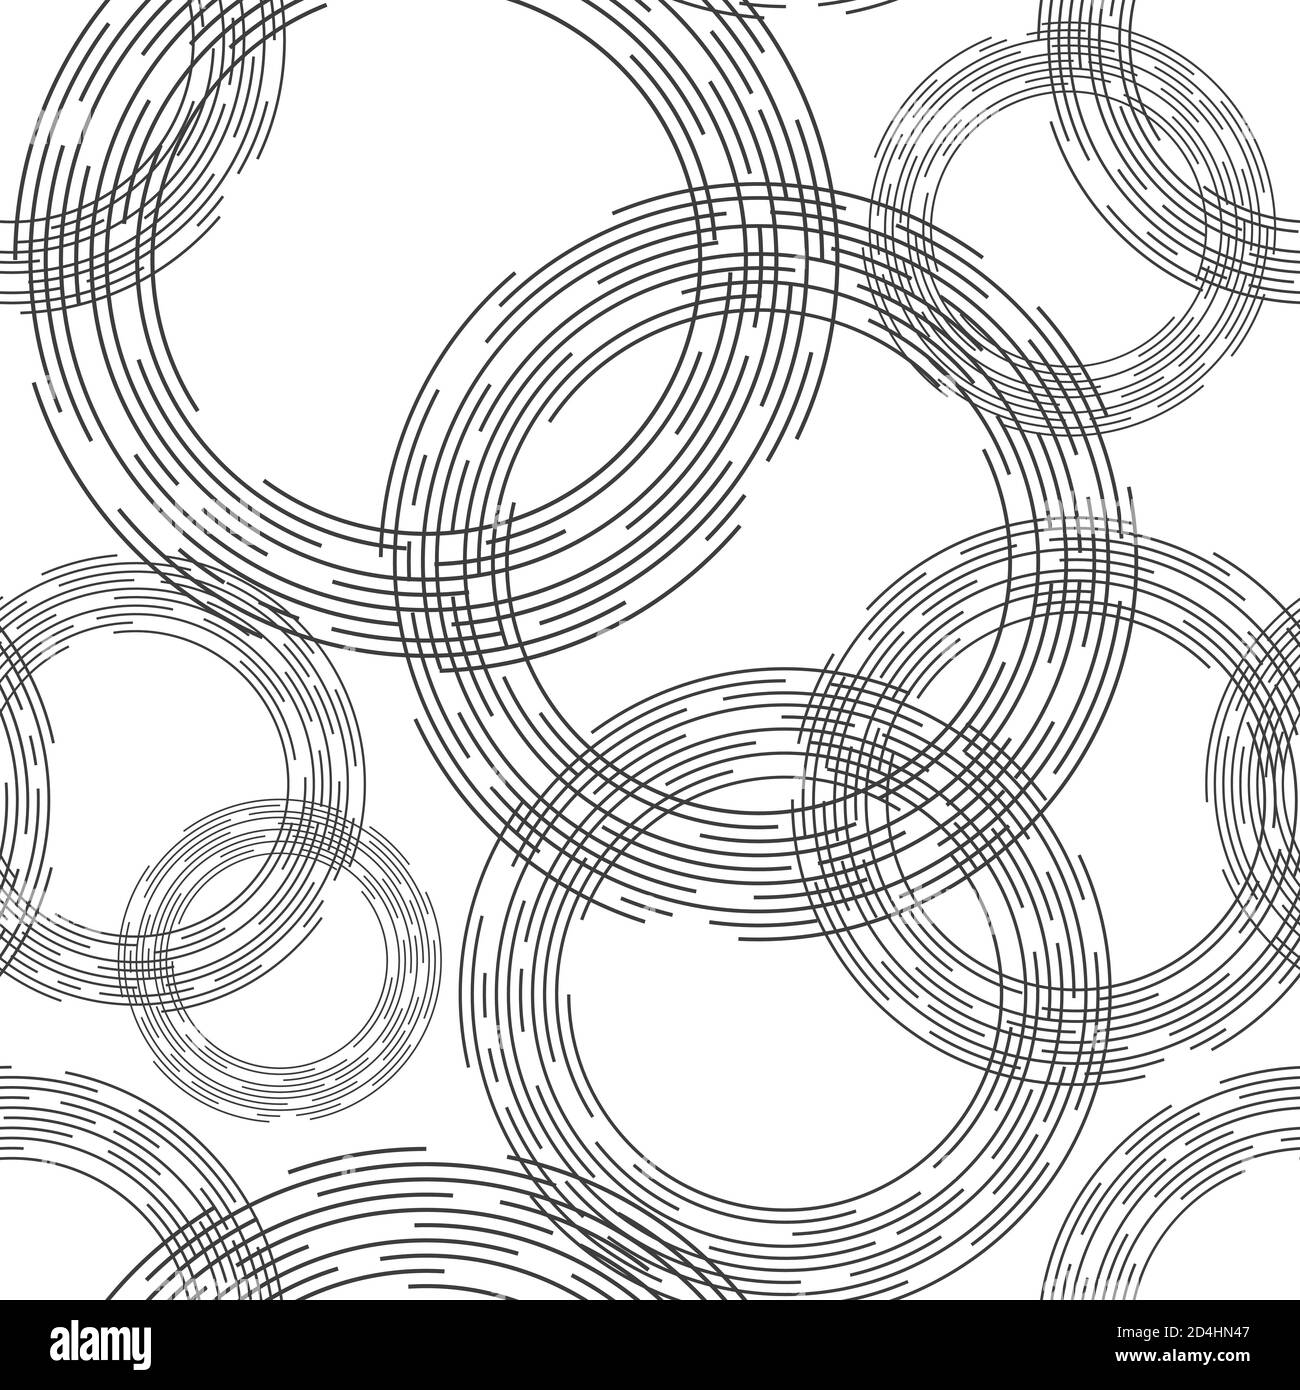 Abstrakt gestreifte Kreise Nahtloses Muster. Vortex kreisförmige Linie Hintergrund. Gepunktete Linien. Vektor monochromer Hintergrund. Stock Vektor